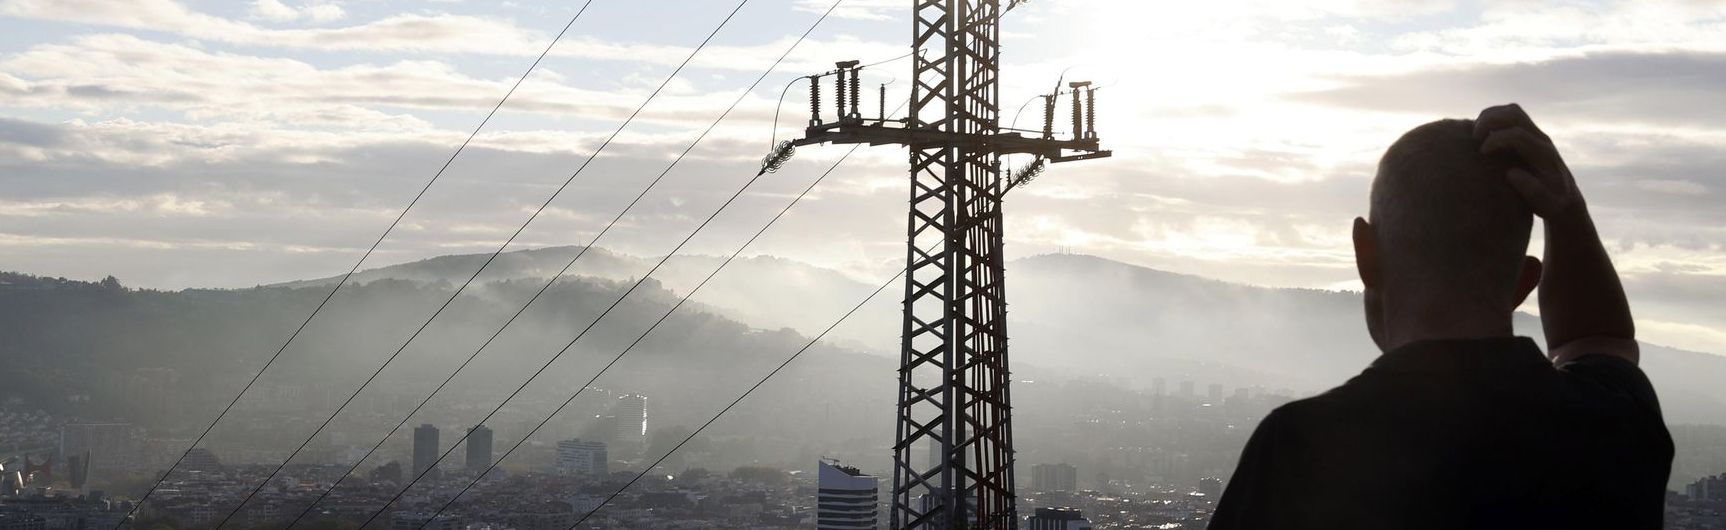 El precio de la electricidad dispara el IPC hasta el 5,5% en octubre, su tasa más alta en 29 años